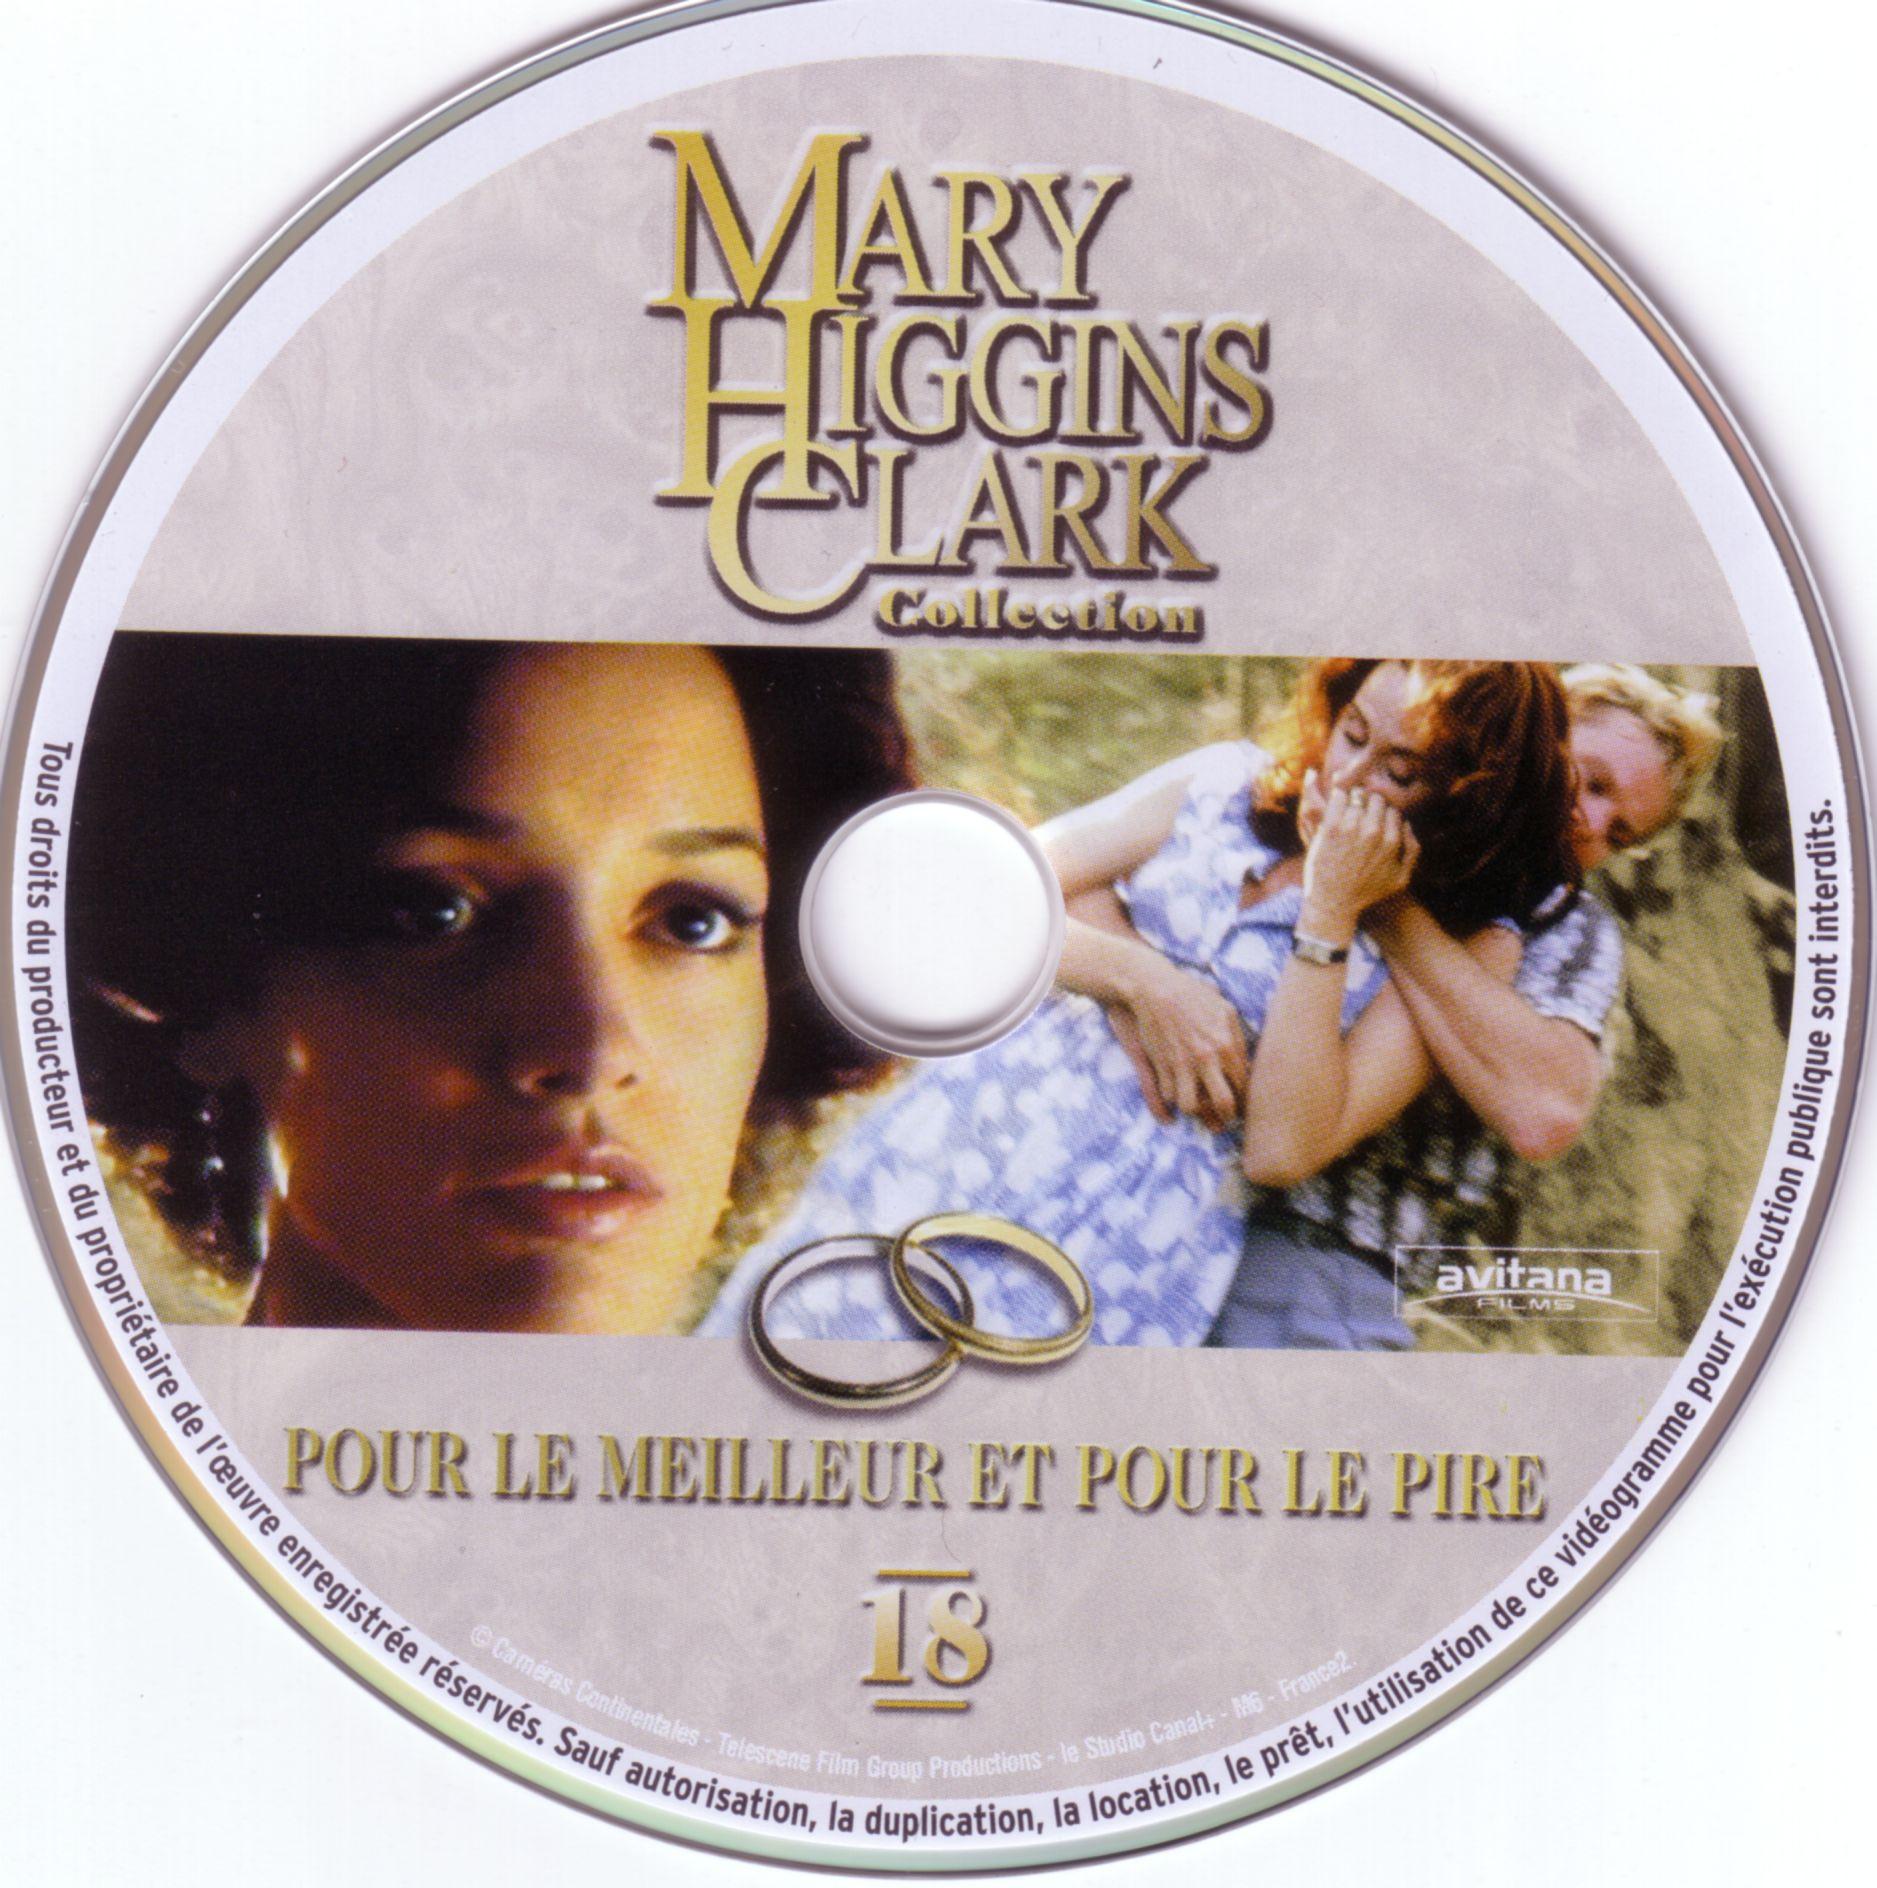 Mary Higgins Clark vol 18 - Pour le meilleur et pour le pire